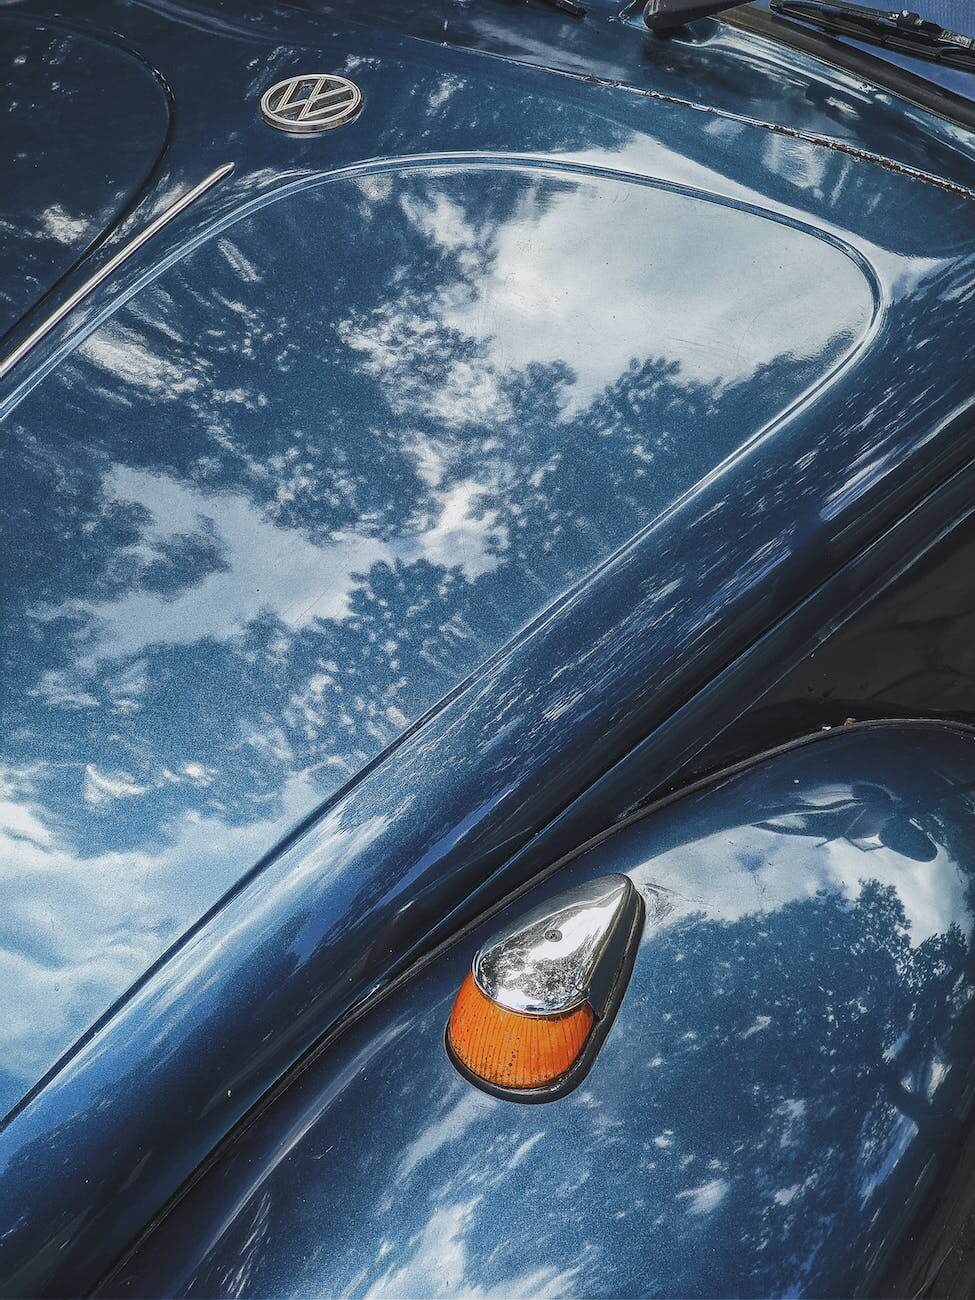 blue car with a shiny hood